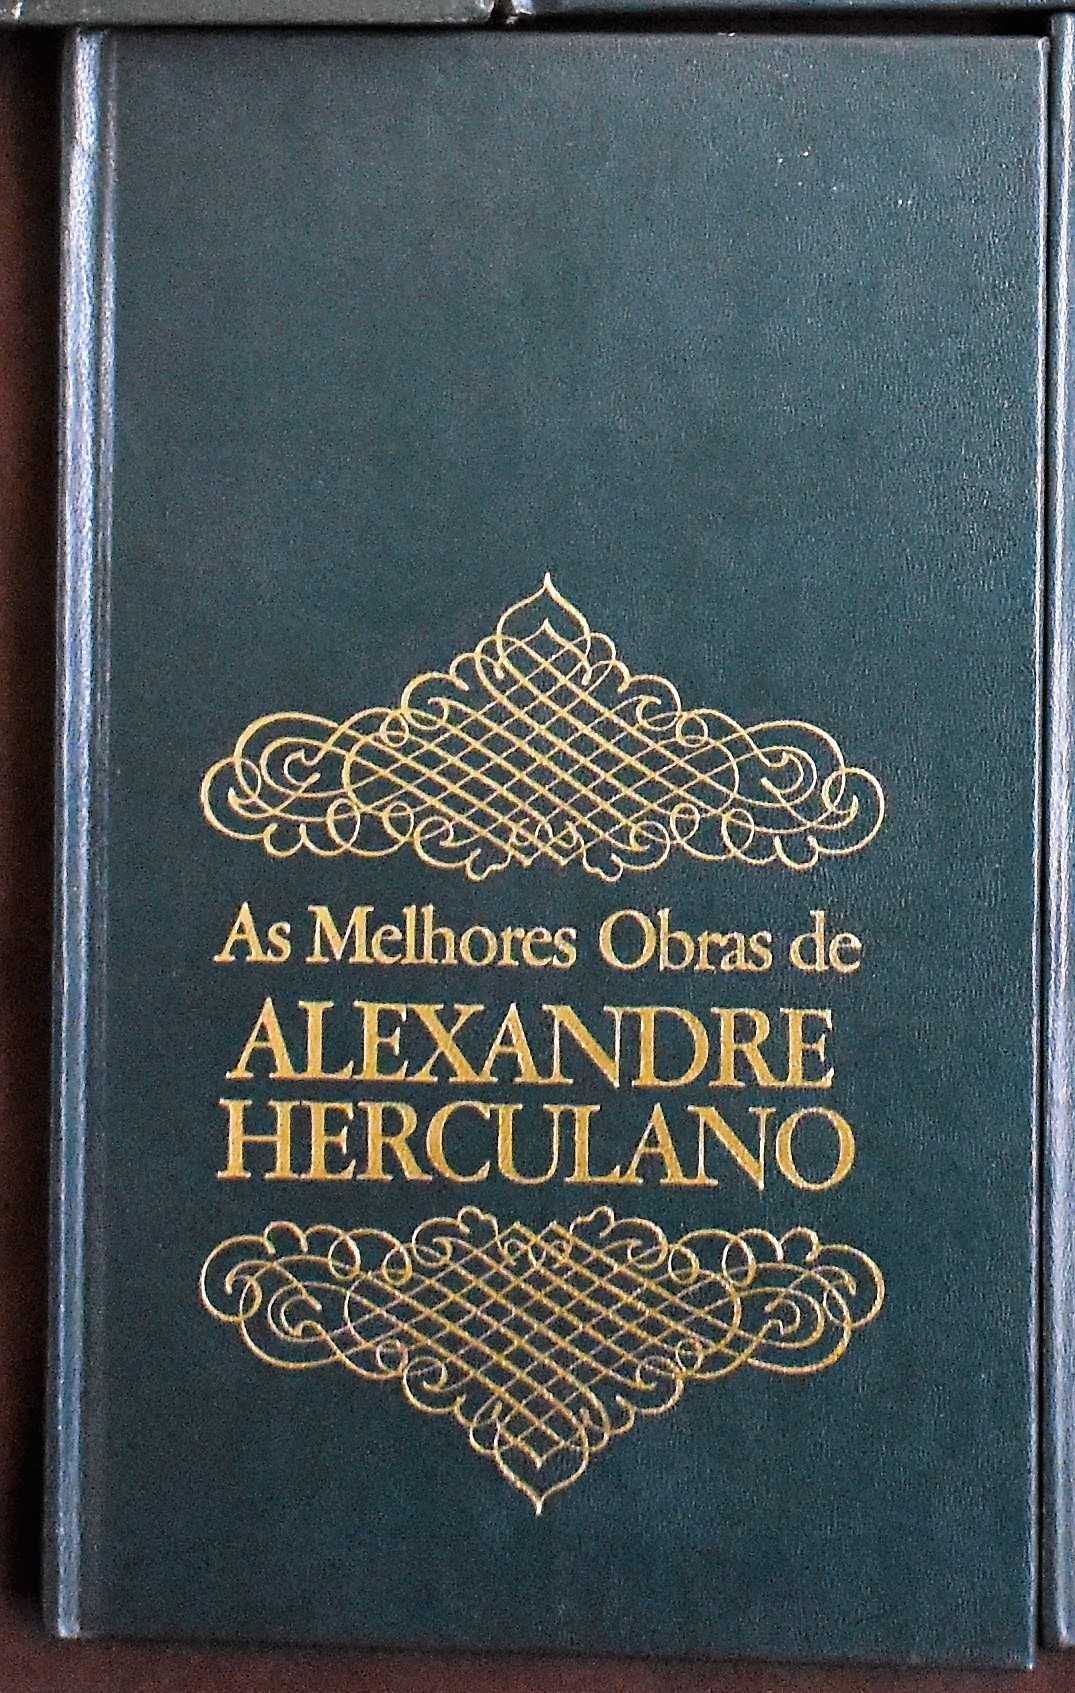 Alexandre Herculano - O Monge de Cister (tomos 1 e 2)